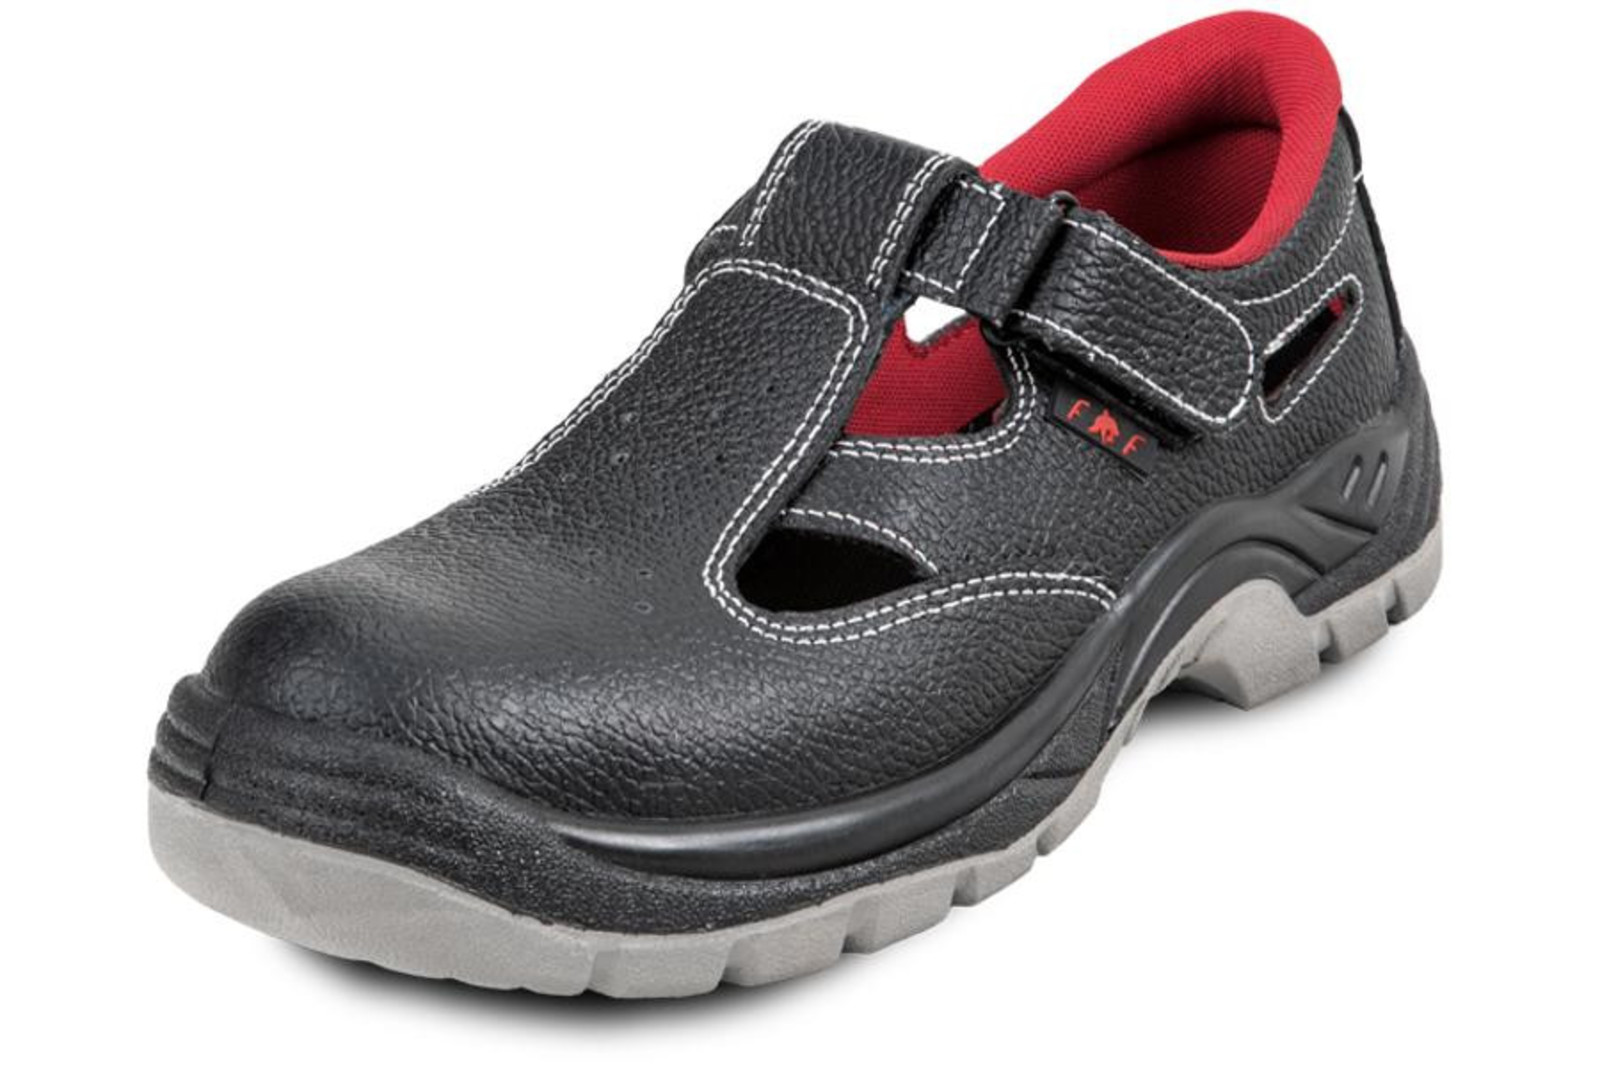 Pracovné sandále Bonn SC 01-002 O1 - veľkosť: 45, farba: čierna